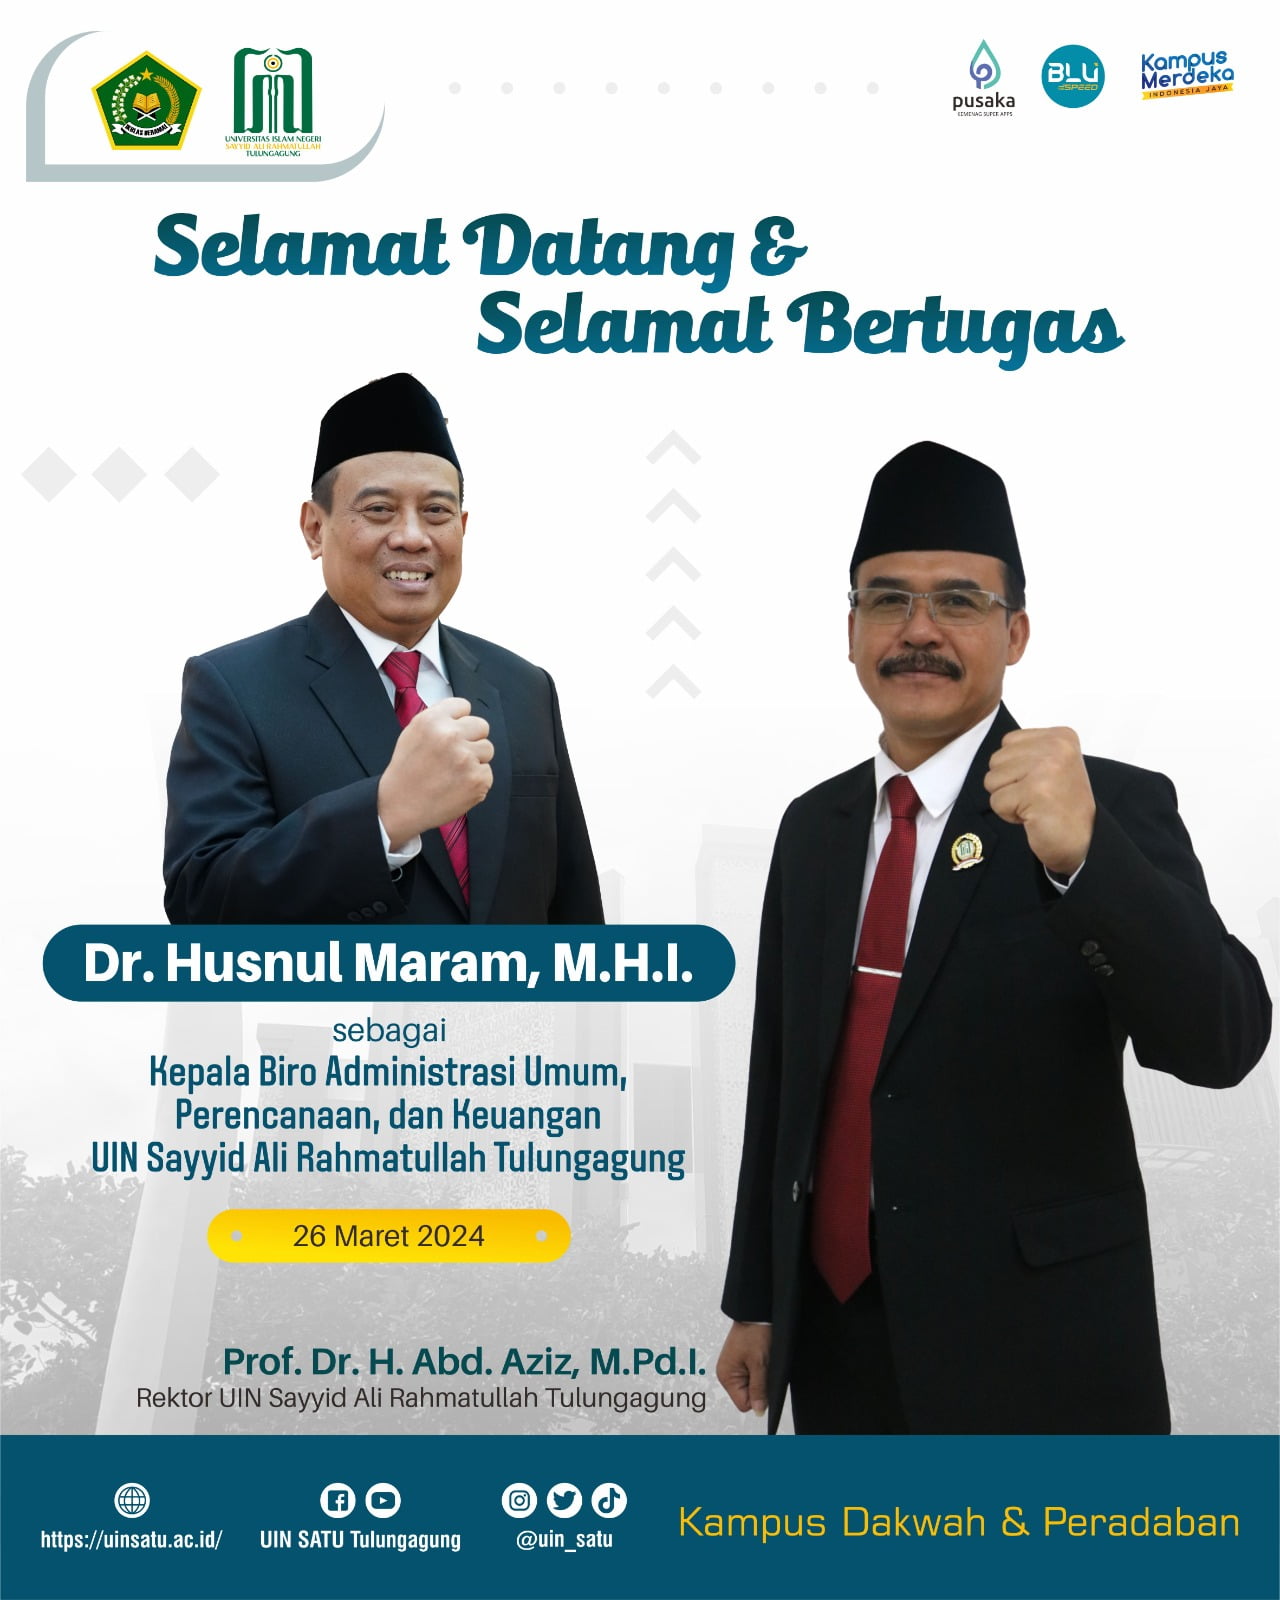 Selamat Datang & Selamat Bertugas Dr. Husnul Maram, M.H.I.